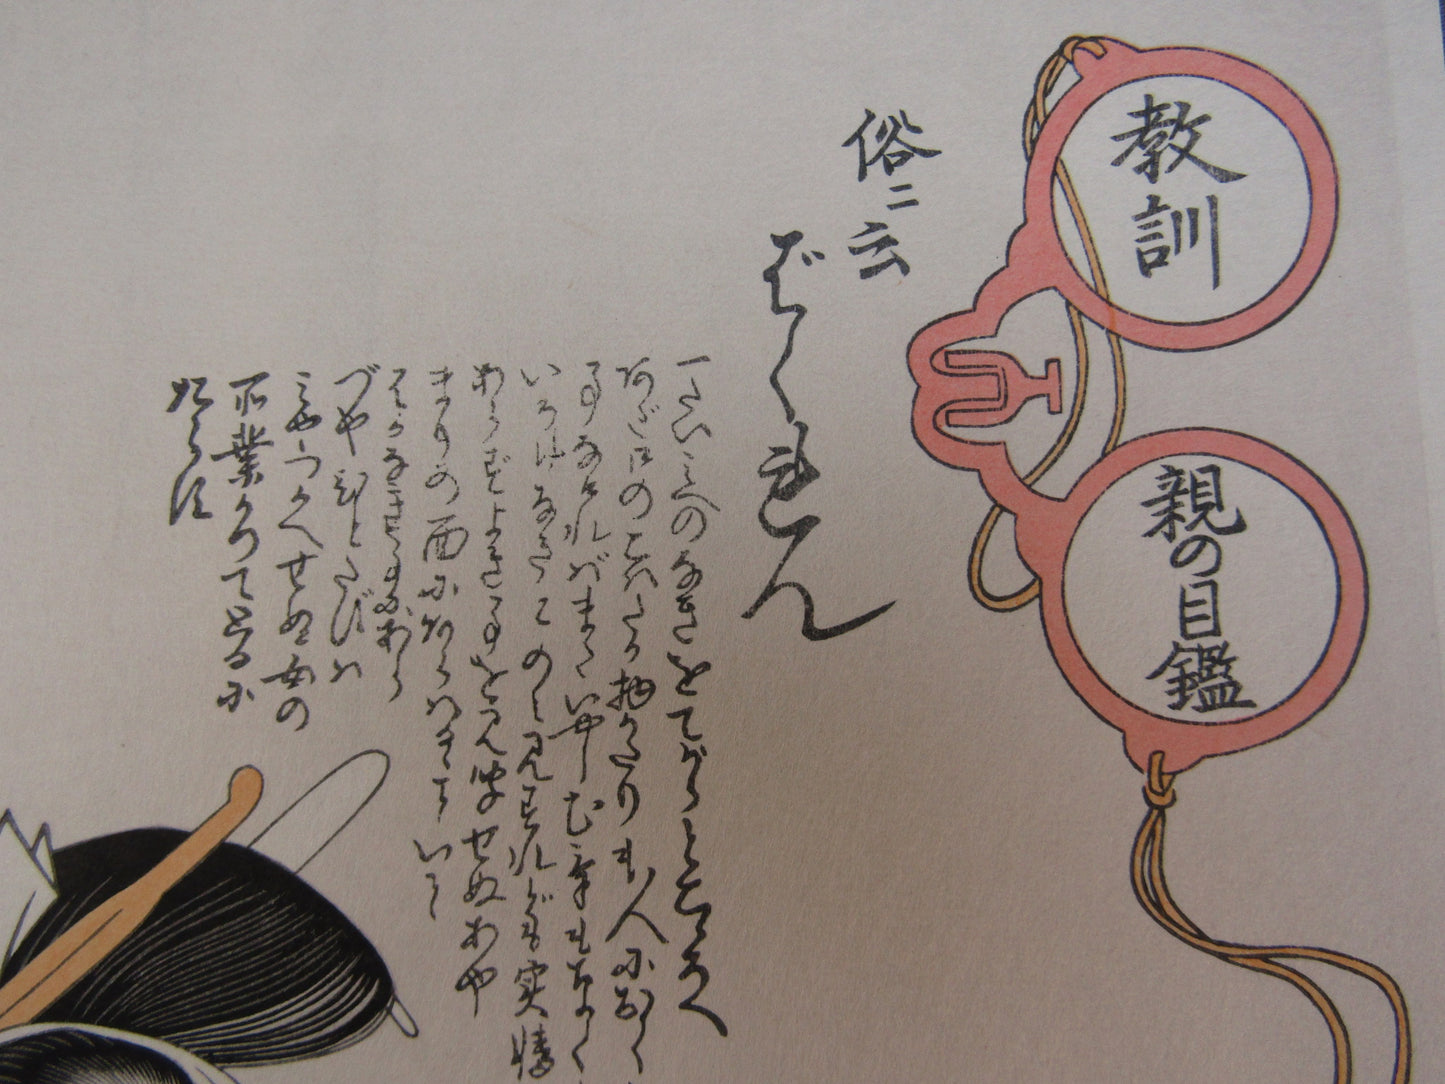 "Bakuren" Utamaro Woodblock print